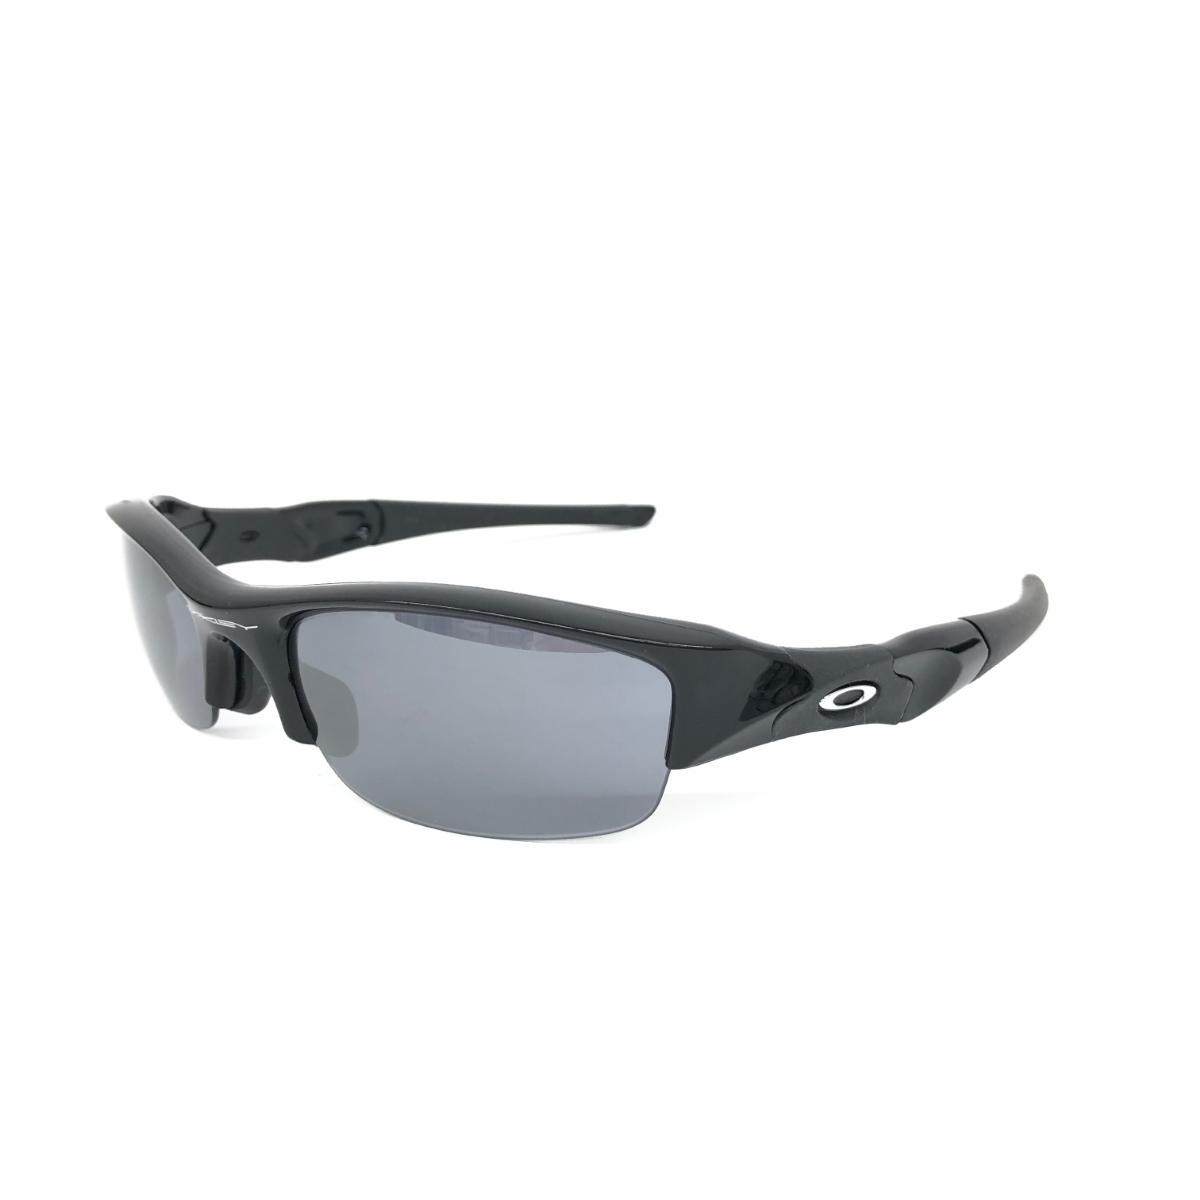 良好◆OAKLEY オークリー サングラス◆03-881J ブラック フラックジャケット メンズ メガネ 眼鏡 サングラス sunglasses 服飾小物